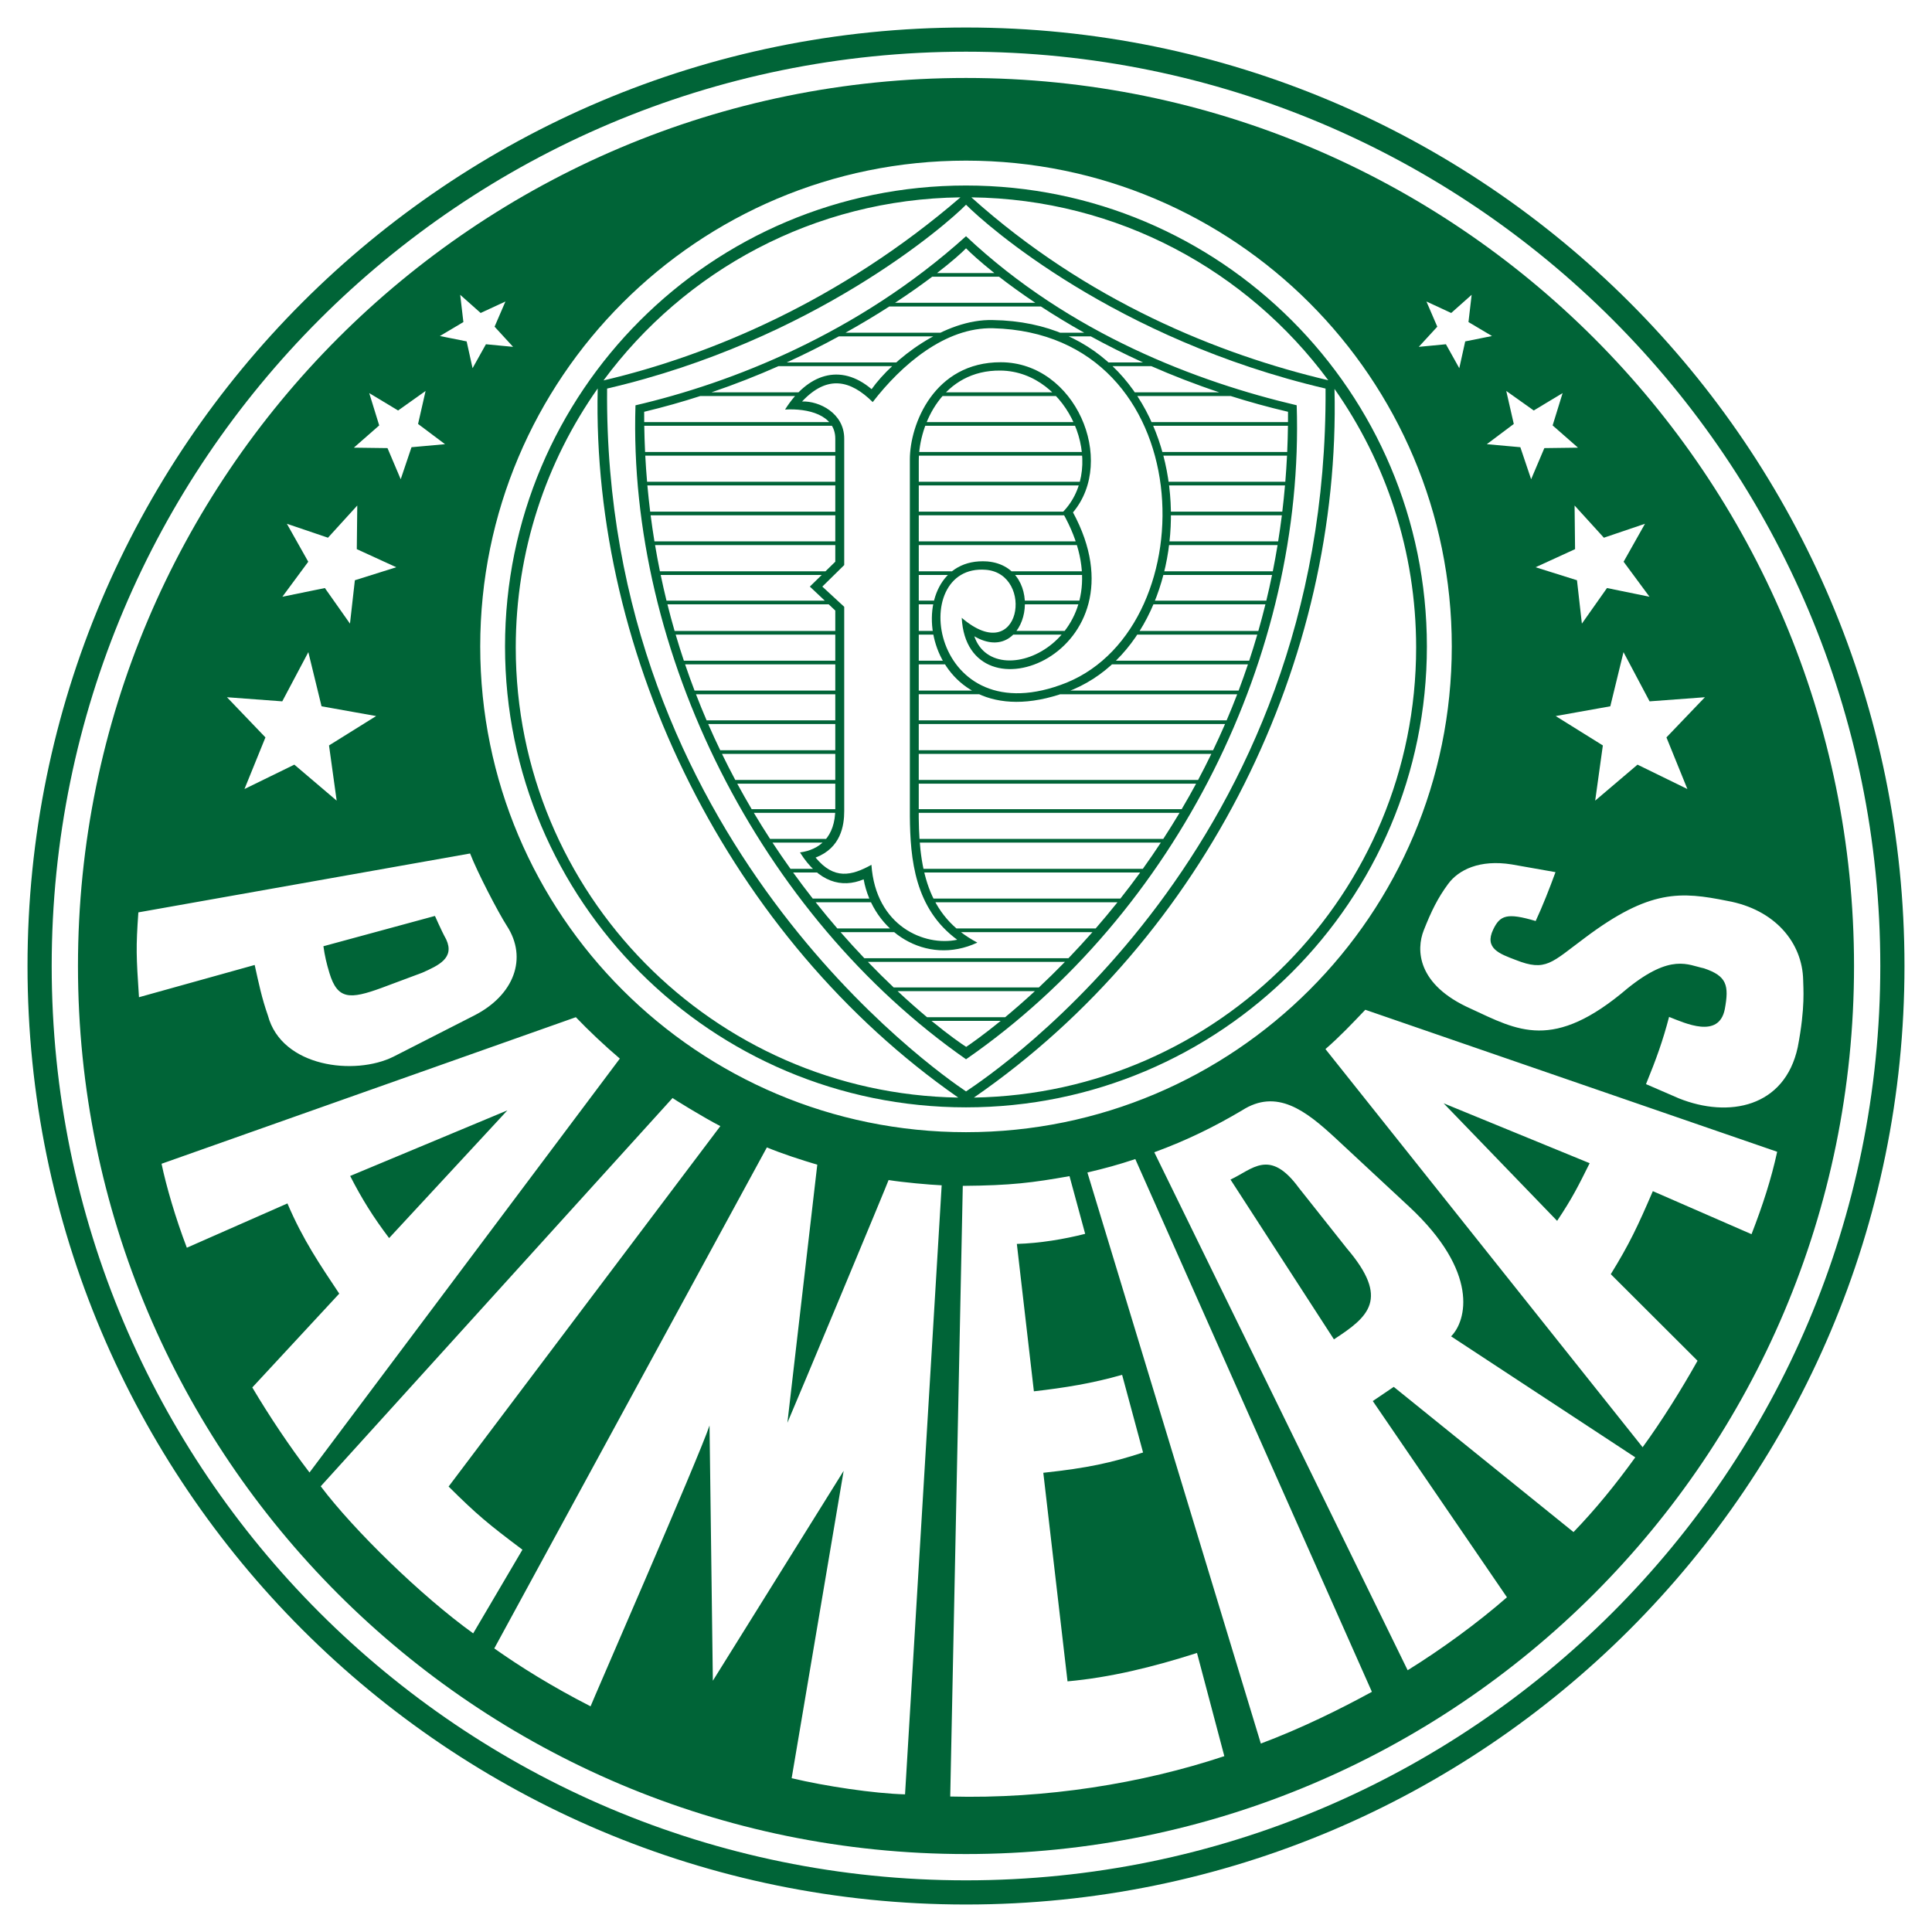 Escudo da Sociedade Esportiva Palmeiras - PNG Transparent - Image PNG